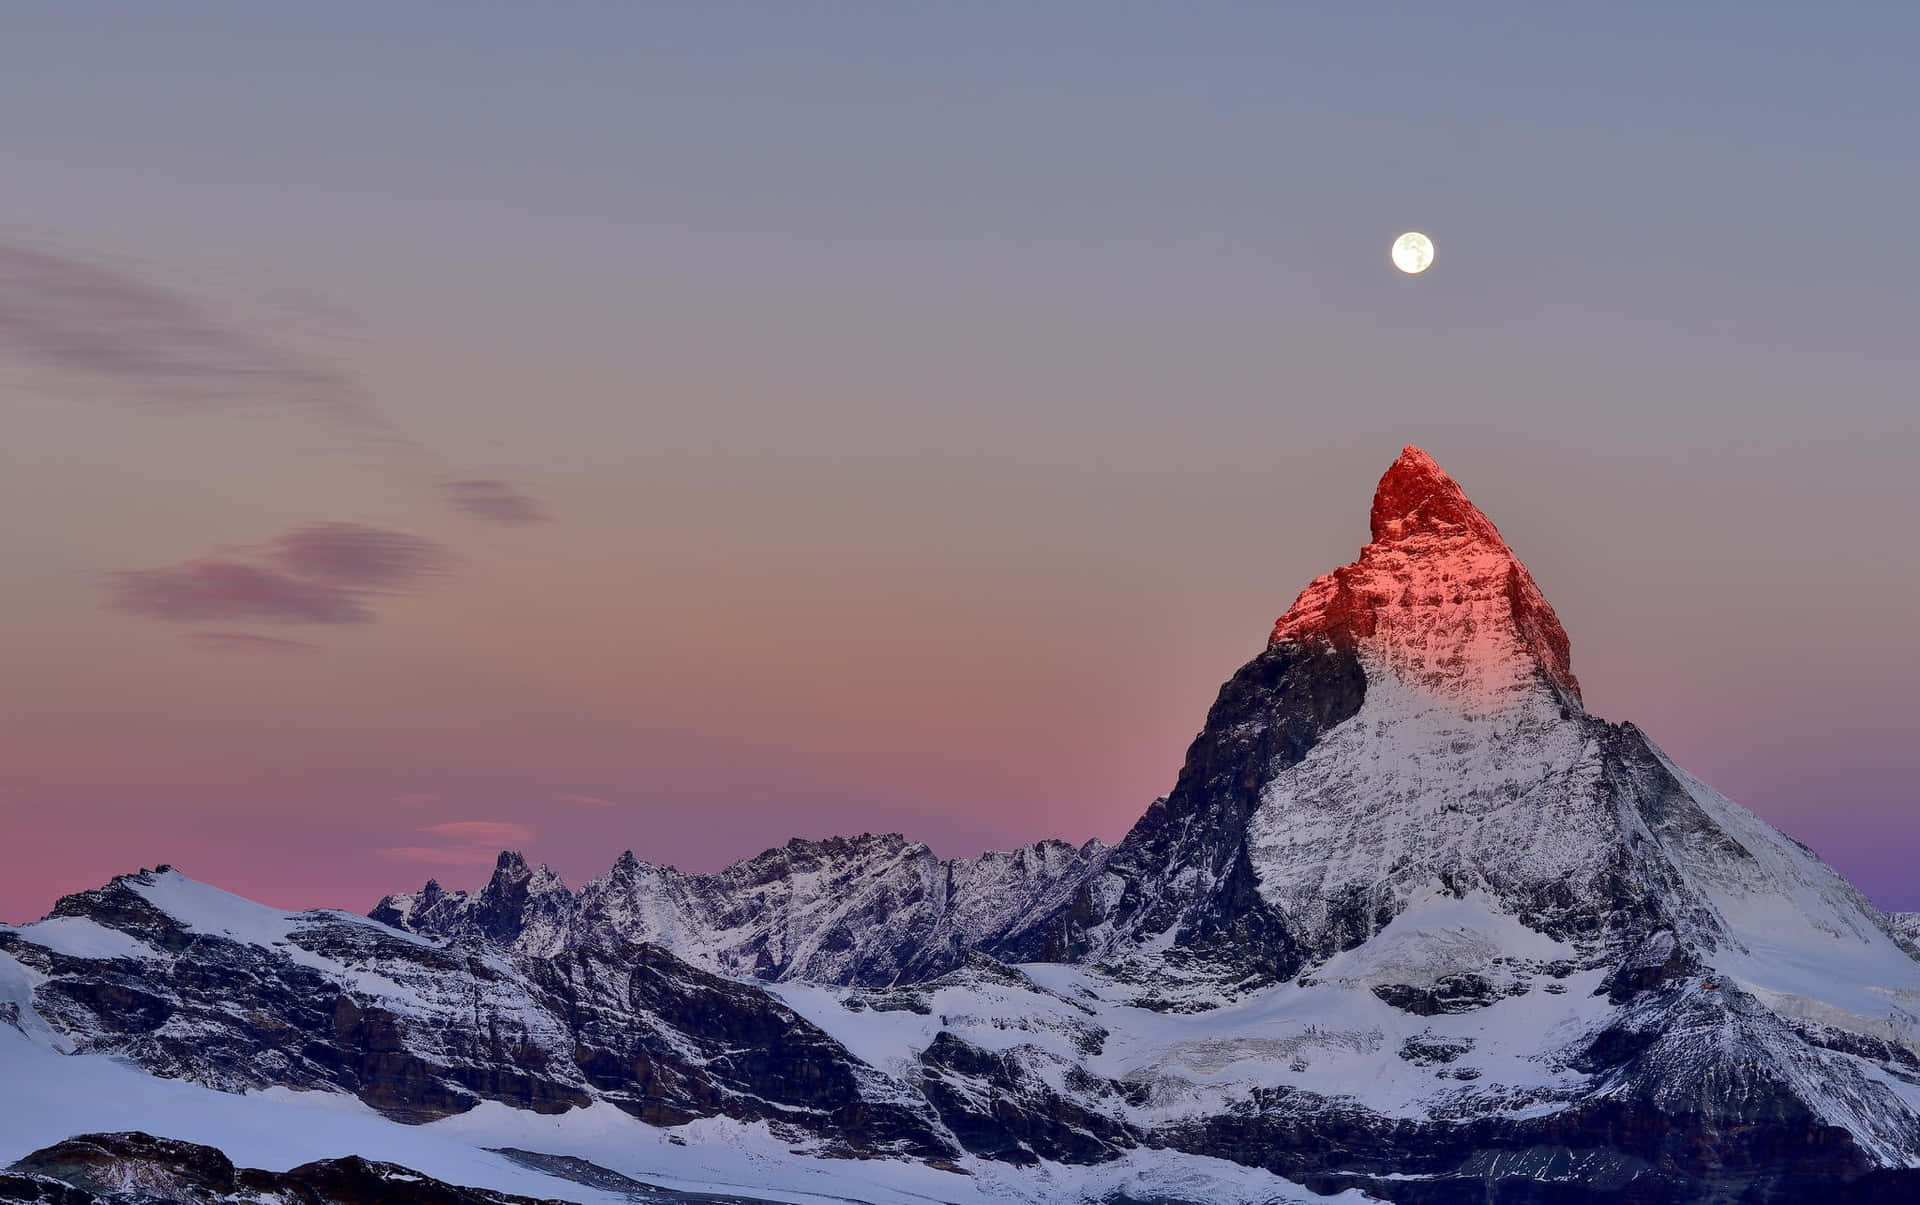 Matterhorn 2048 X 1285 Wallpaper